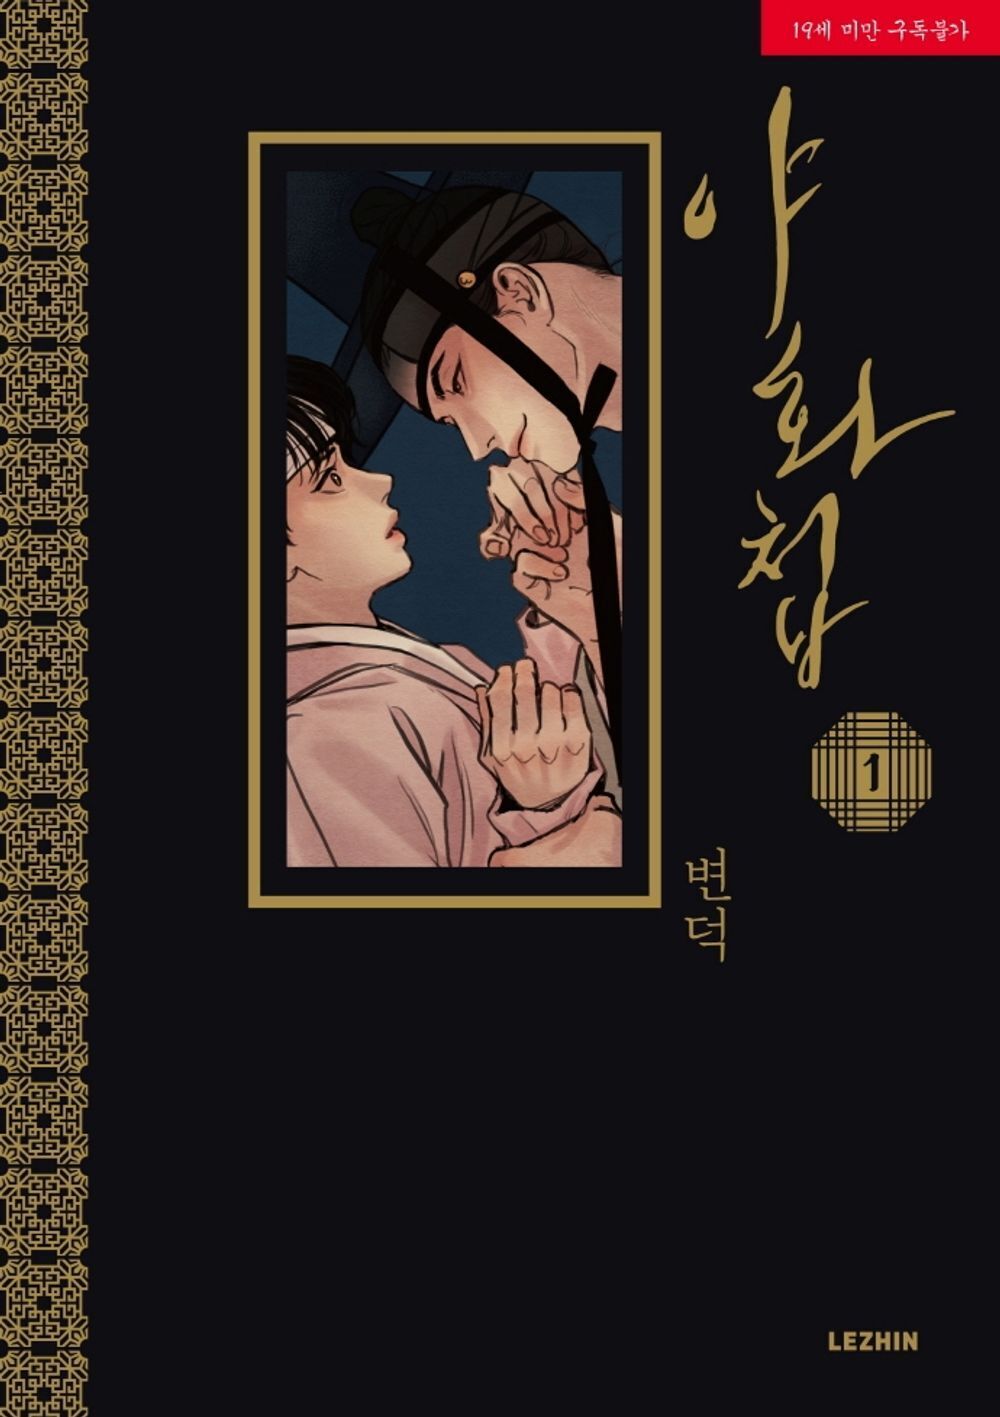 Painter of the Night Korean Webtoon Book Manhwa Comics Manga BL